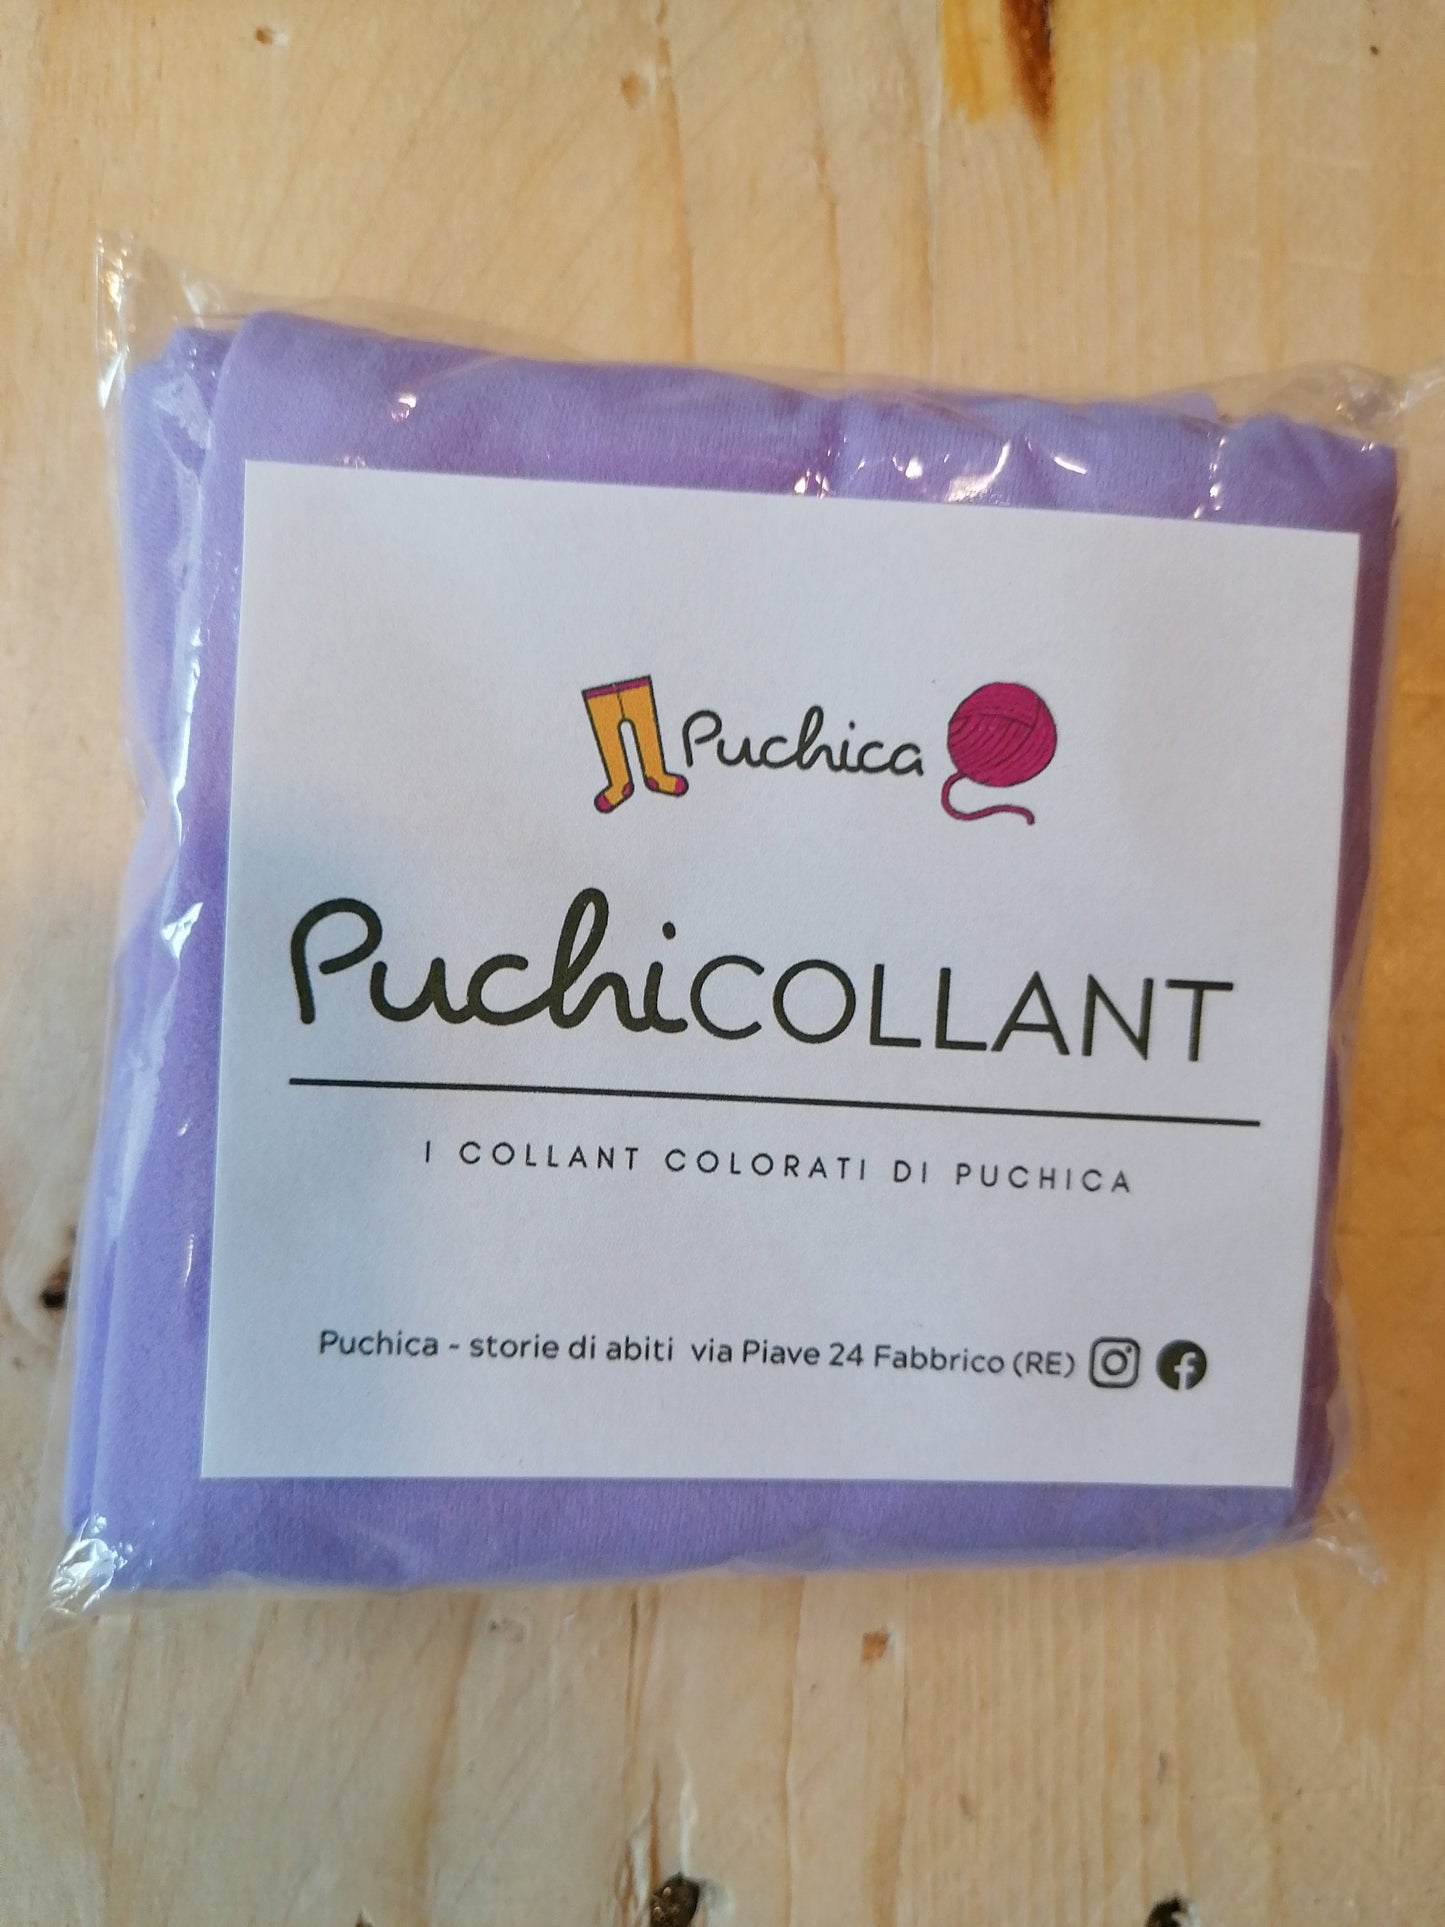 PuchiCOLLANT - i collant colorati di Puchica